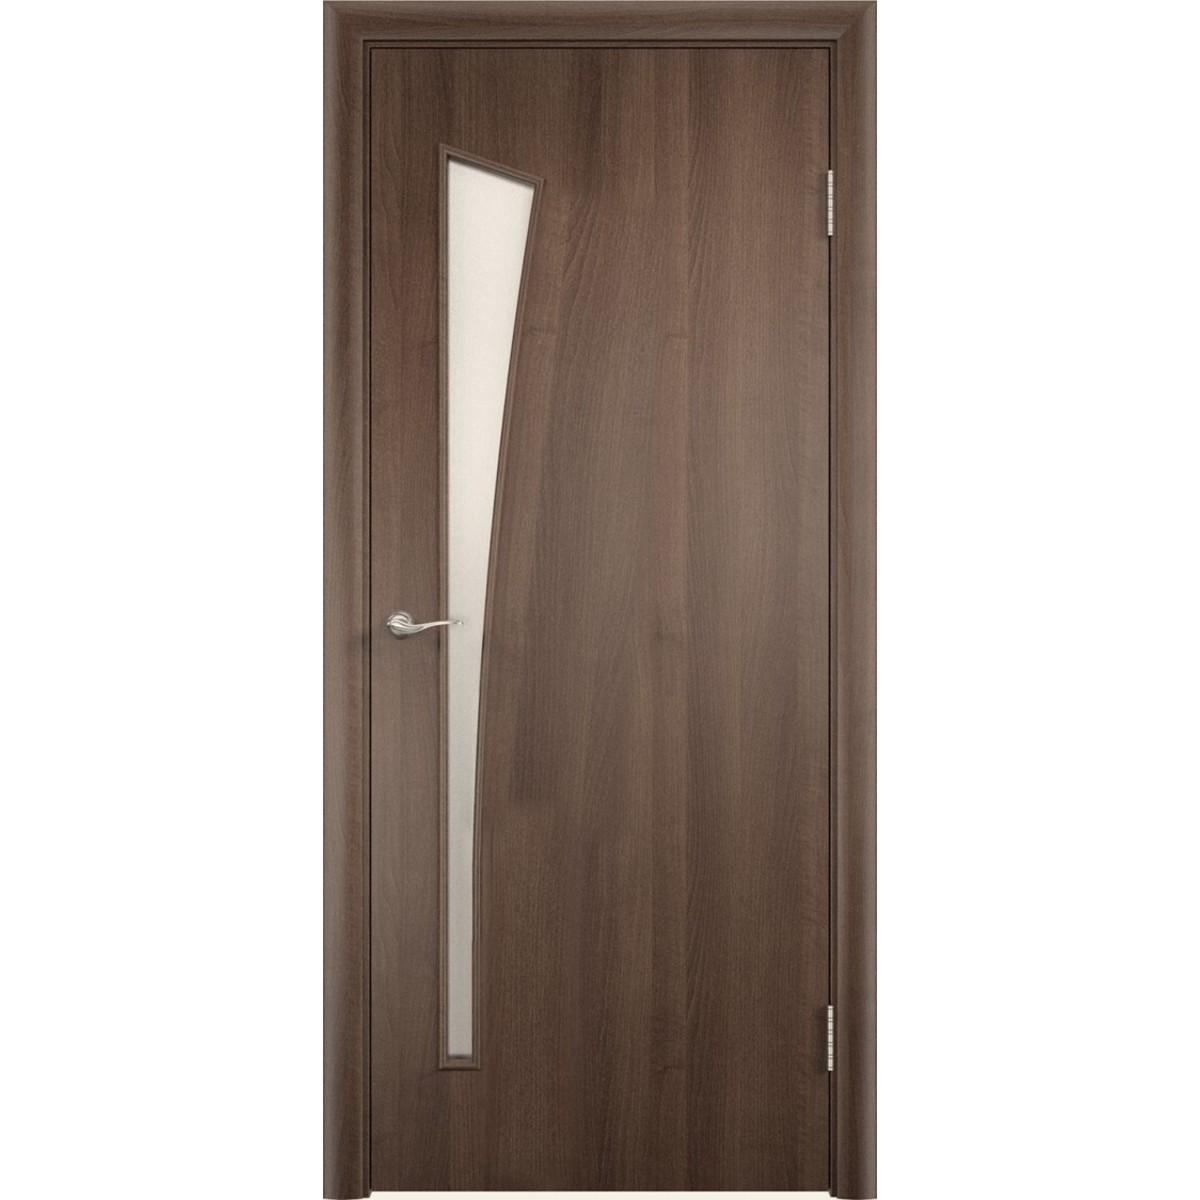 Дверь межкомнатная остеклённая без замка и петель в комплекте Белеза 60x200 см ламинация цвет дуб тёрнер коричневый